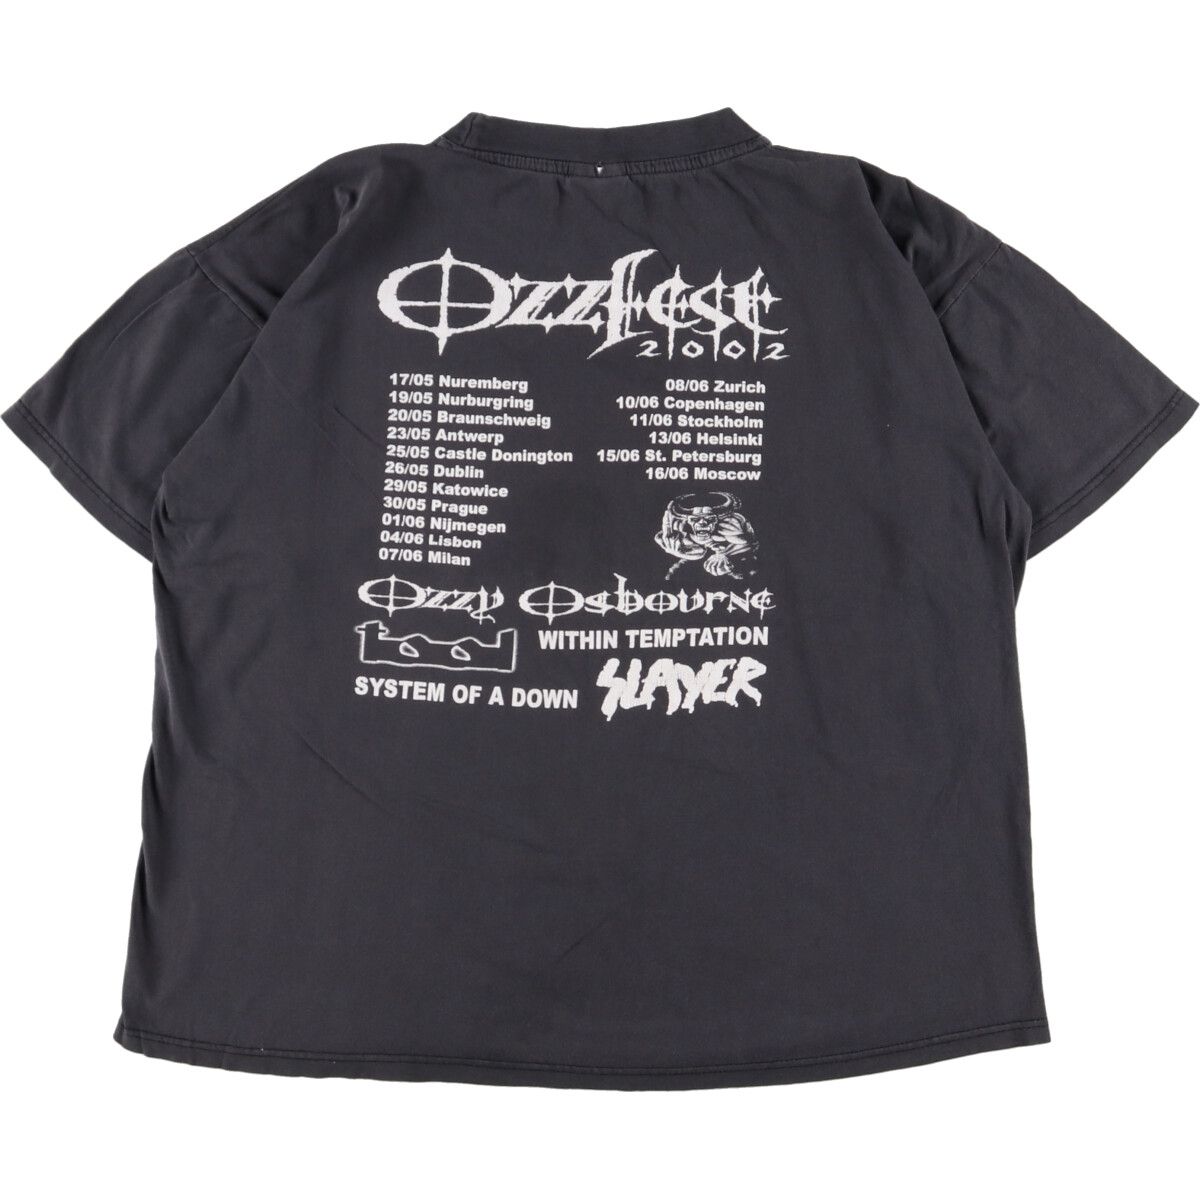 販売 2005 Ozzfest オジーオズボーン tシャツ - トップス